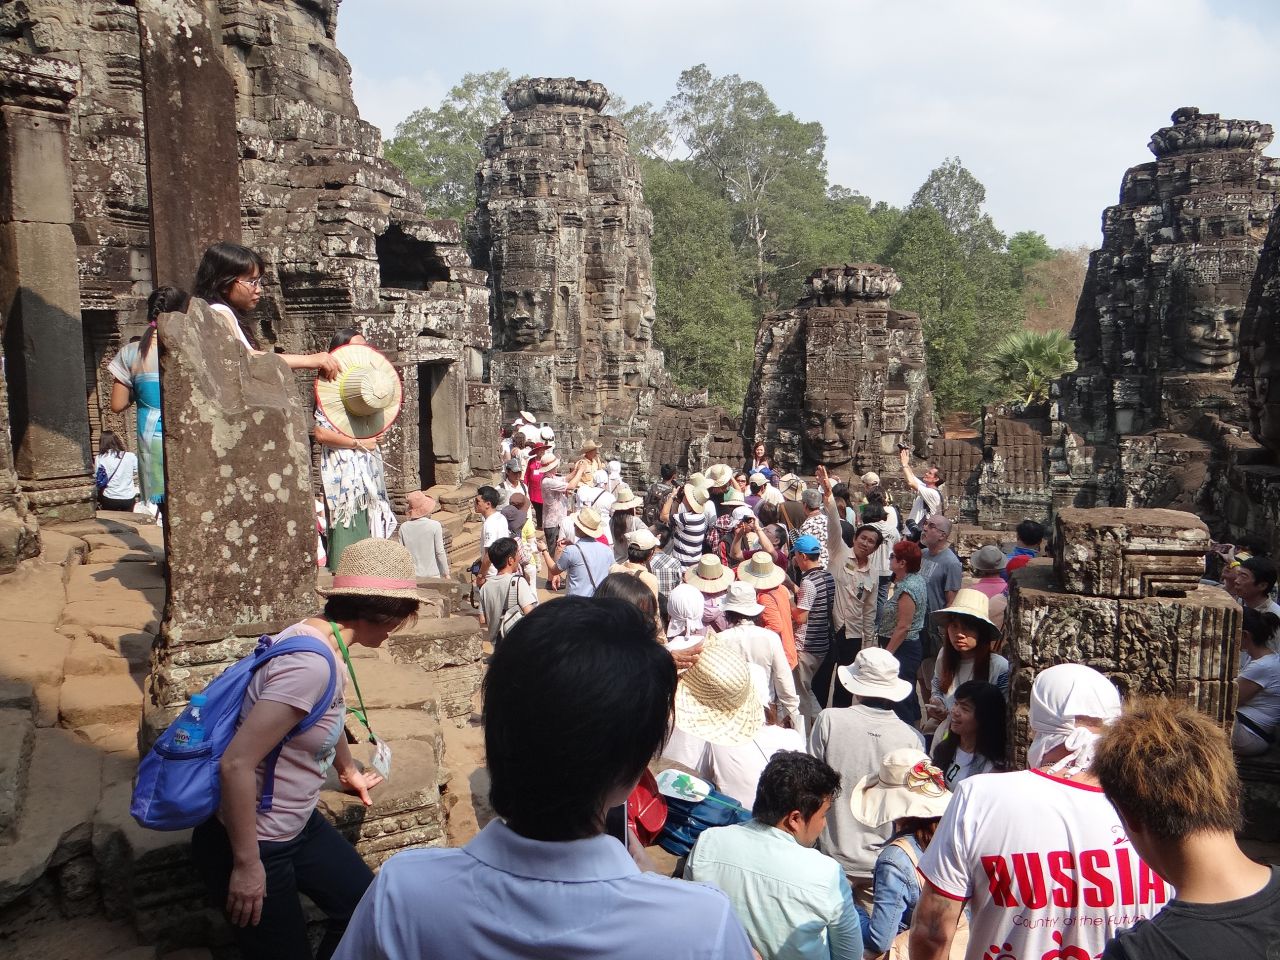 Туристы и паломники. - Камбоджа, Лаос. Февраль 2014. Часть 2. Ангкор.